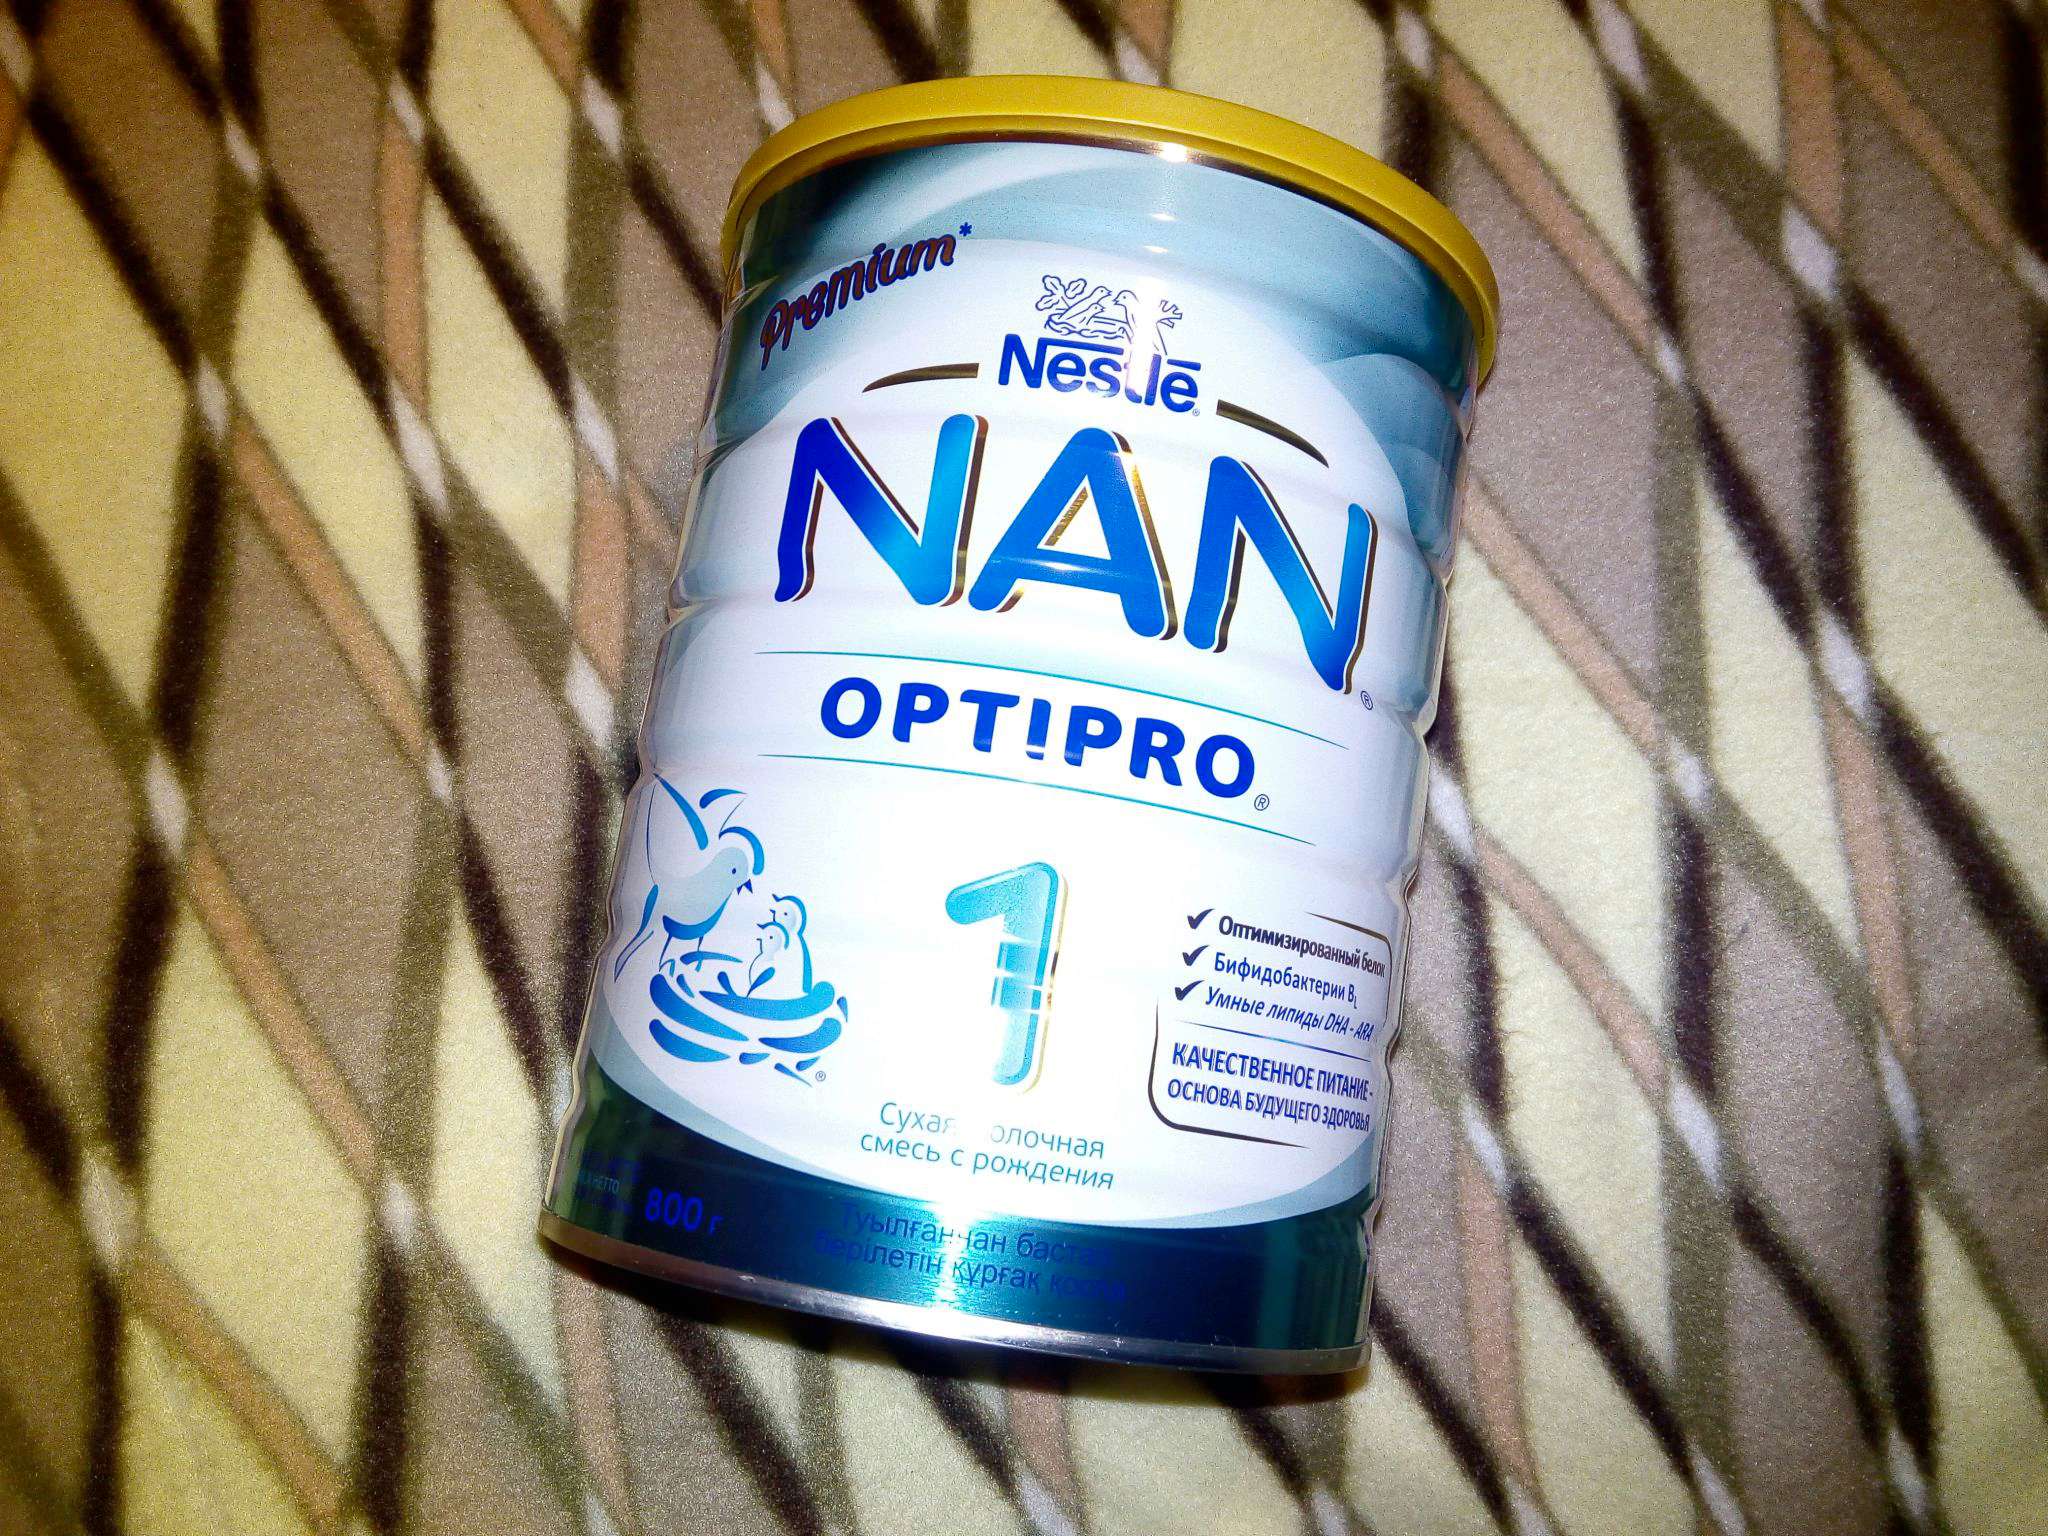 Nestle nan Premium Optipro 1